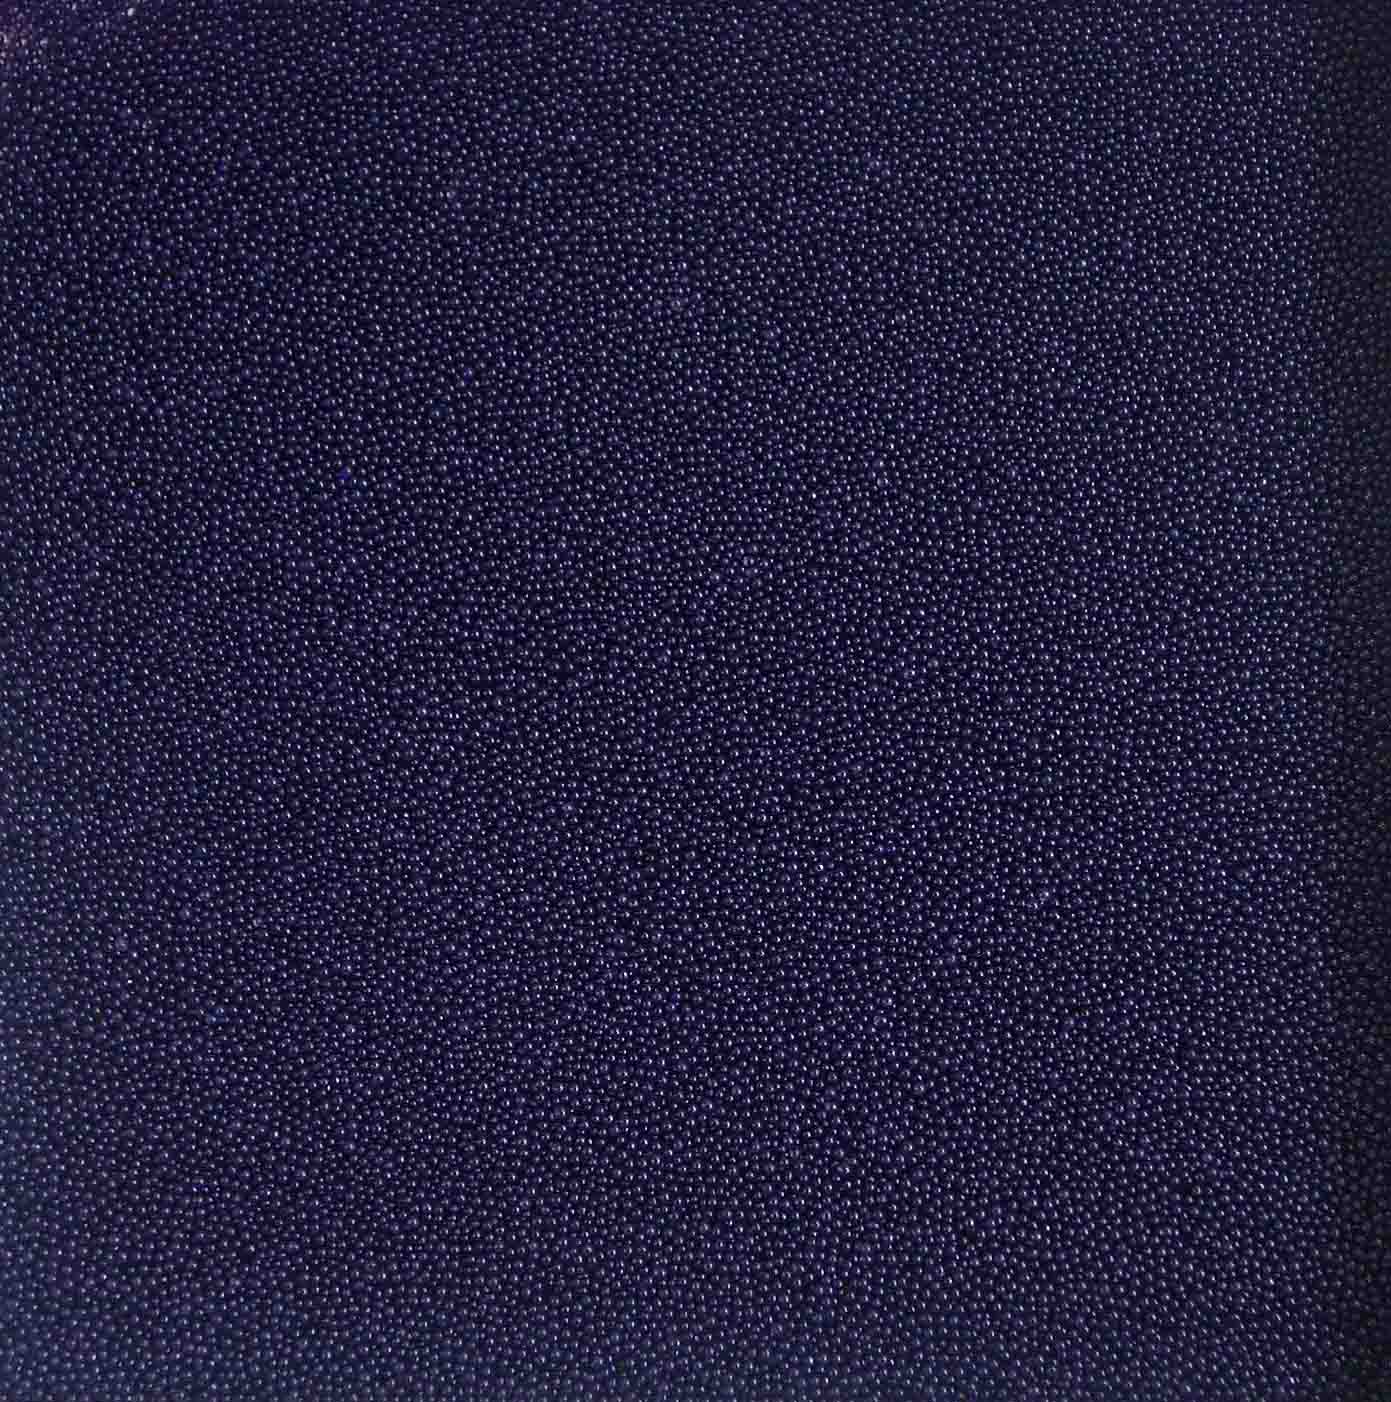 Glasperlen, 200gr dunkel ocean